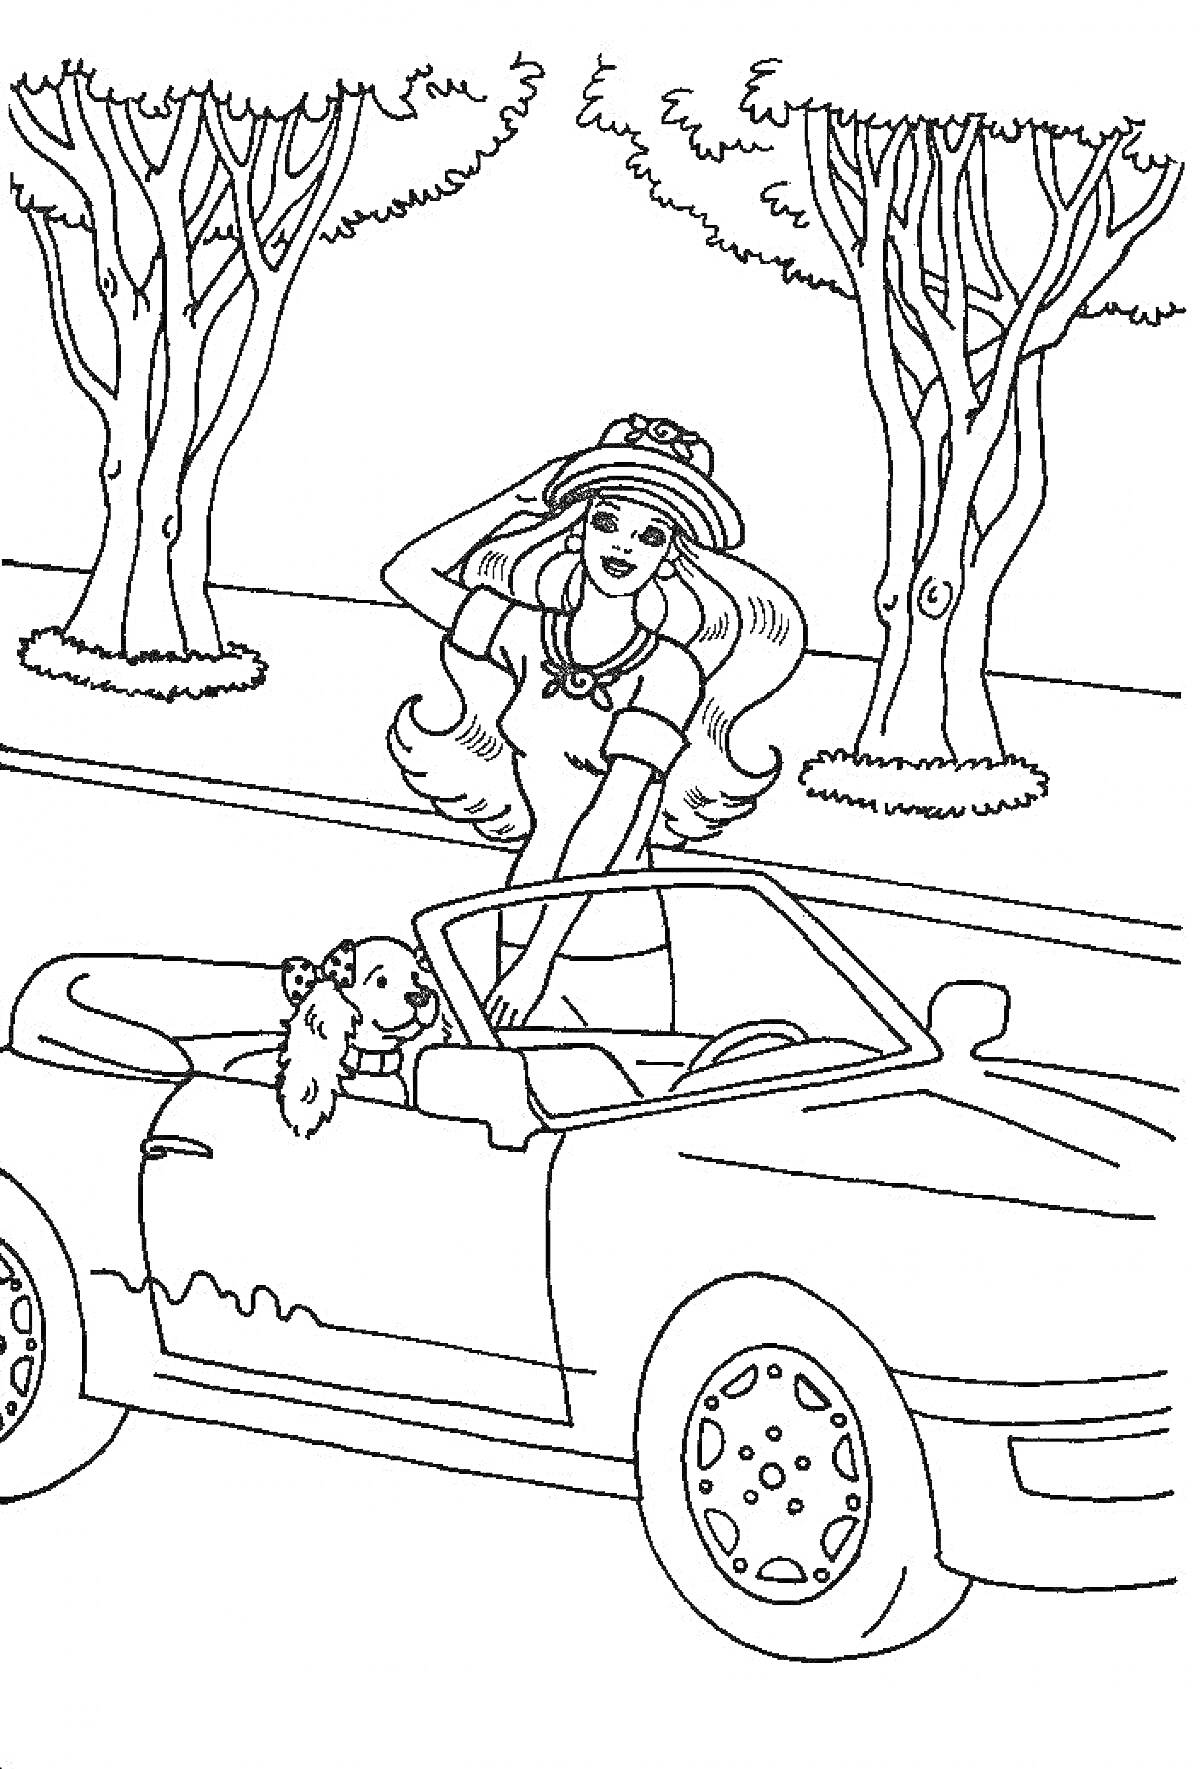 Раскраска Барби в шляпе за рулем машины с собакой на фоне деревьев